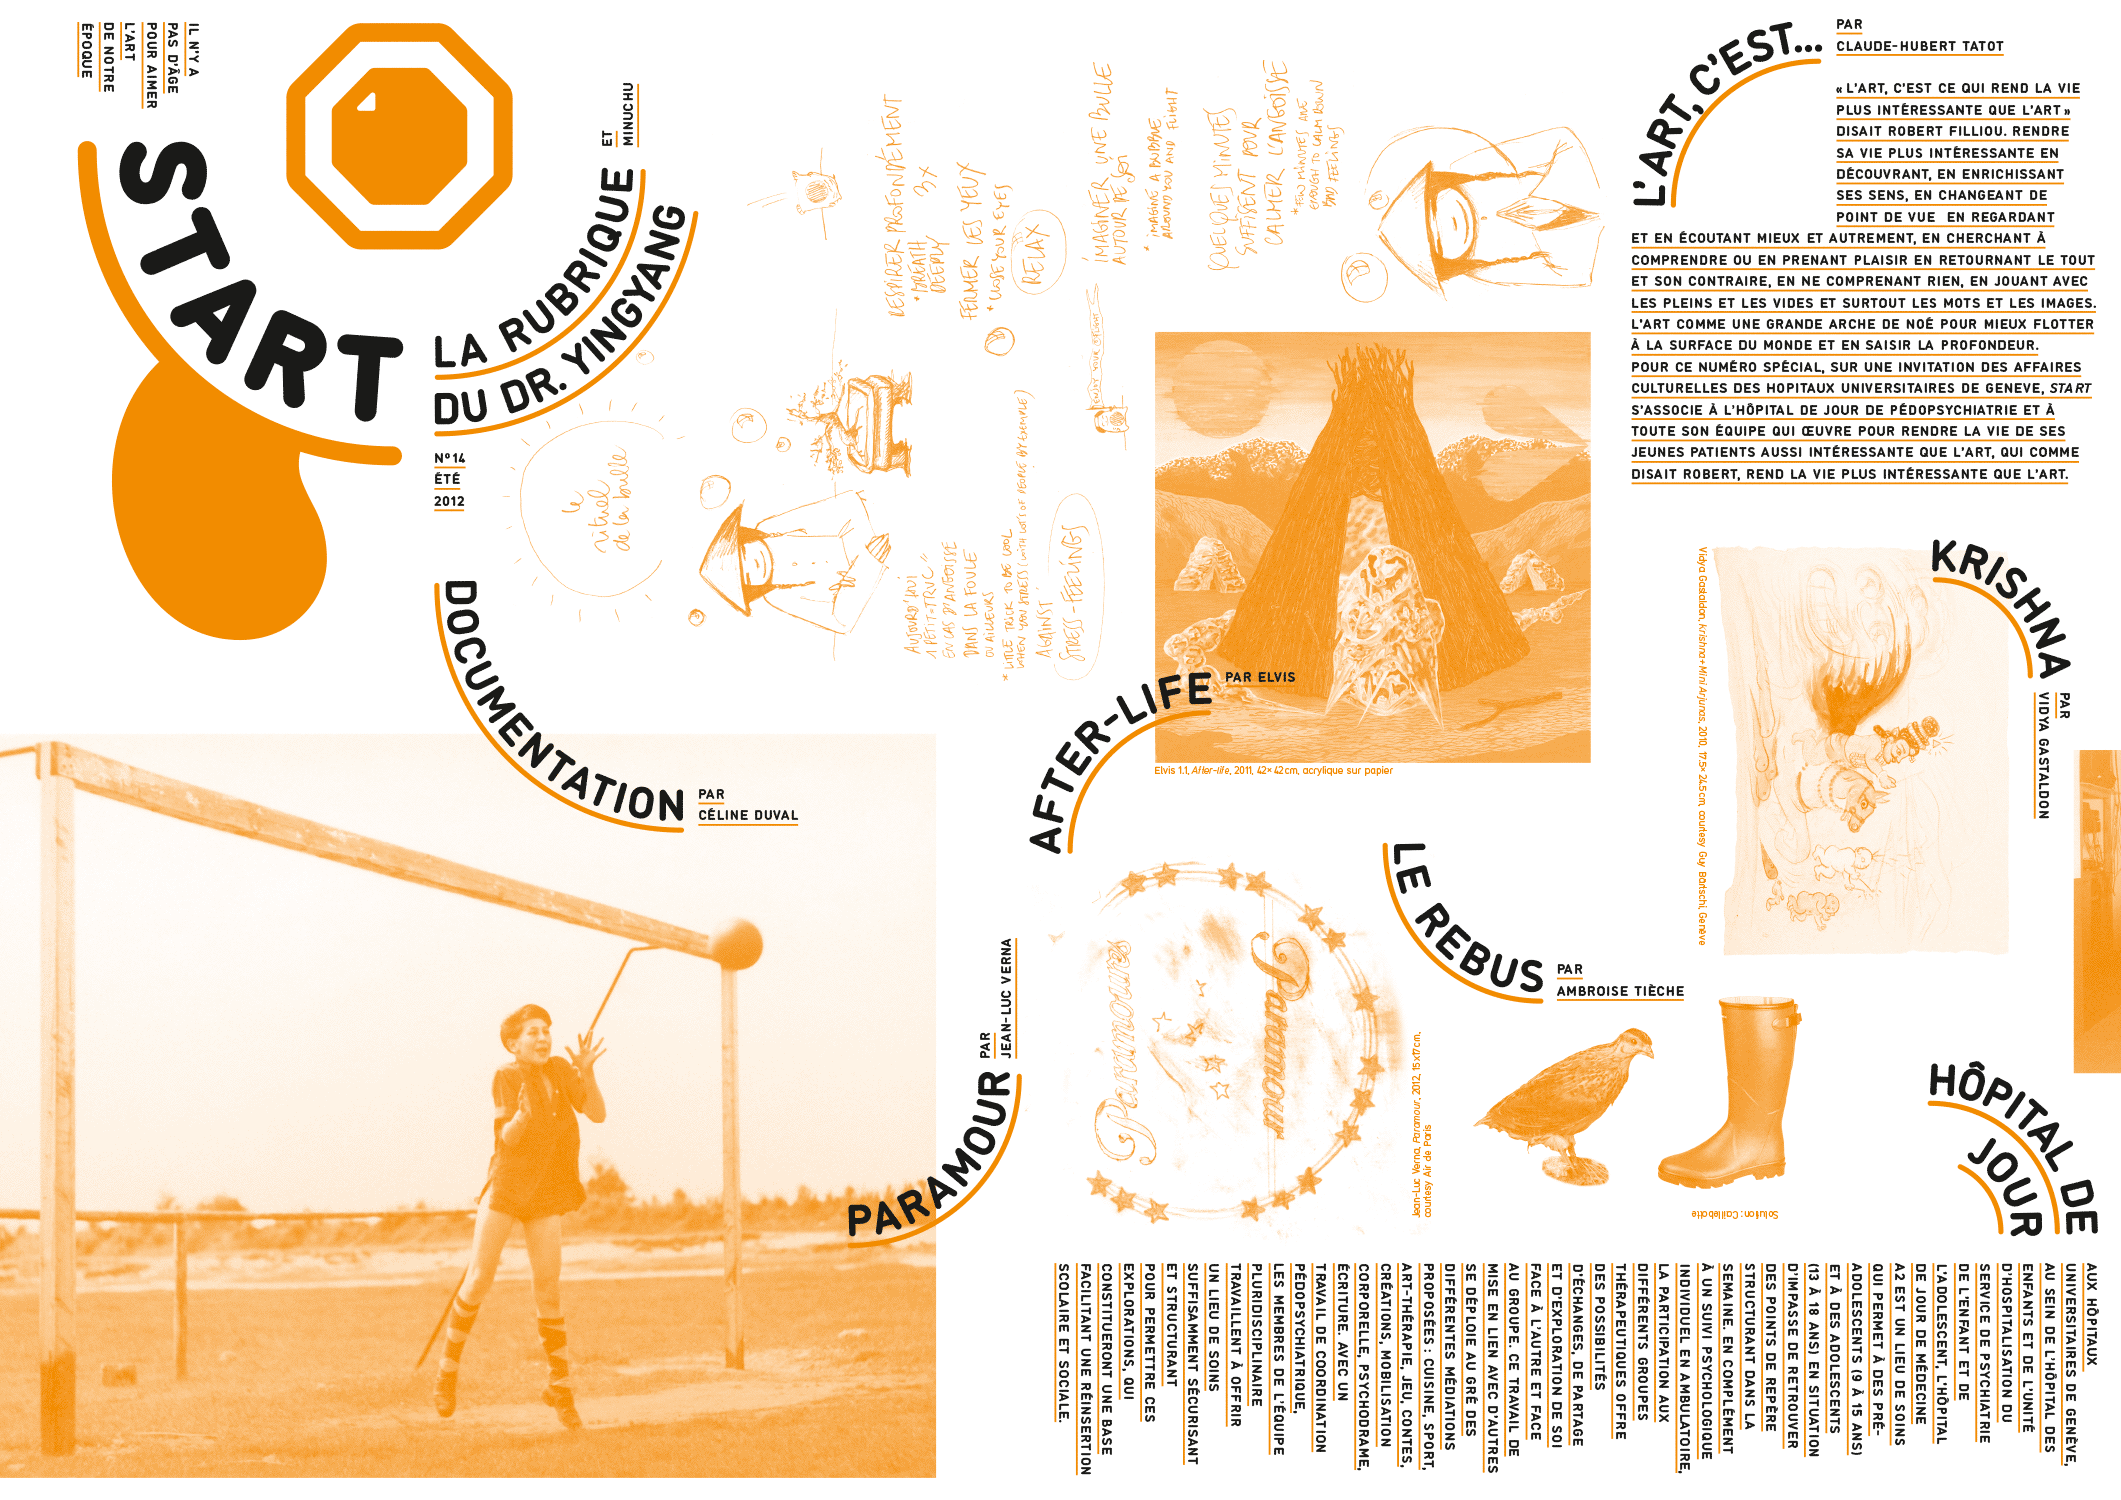 Magazine/dépliant d’art contemporain pour les enfants, édité par Claude-Hubert Tatot et Alexia Turlin, inséré dans le Kunstbulletin (verso)